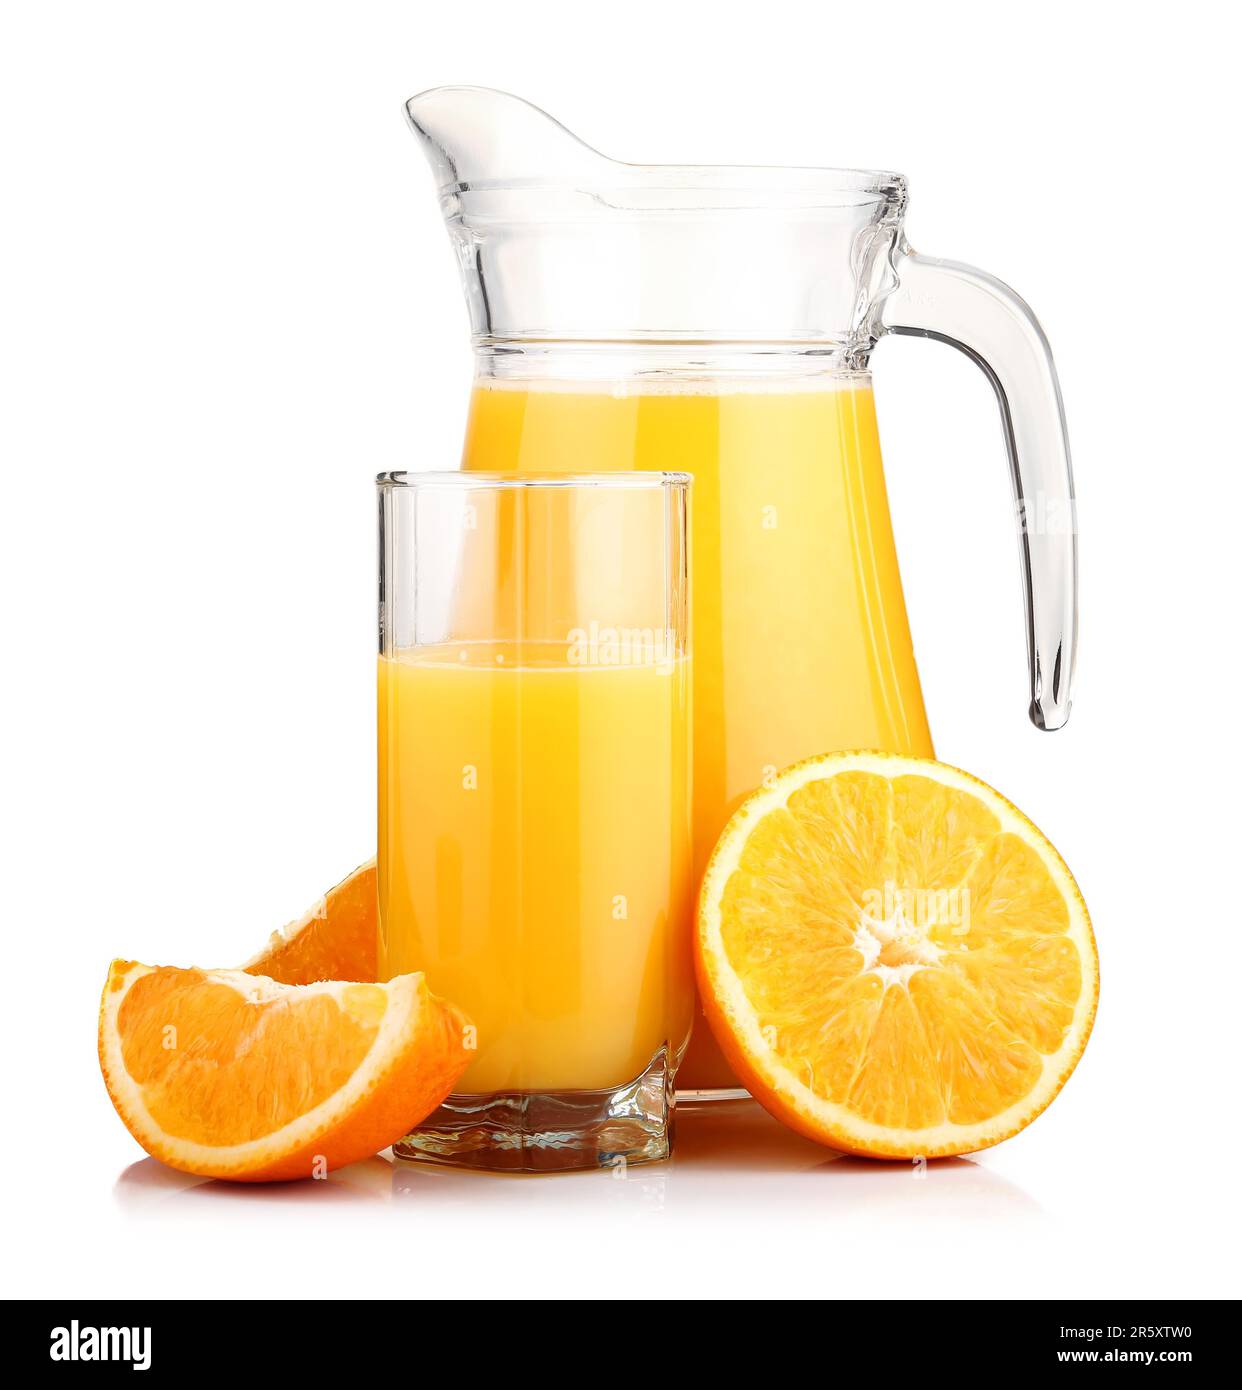 https://c8.alamy.com/comp/2R5XTW0/jug-of-orange-juice-and-orange-fruits-isolated-on-white-background-2R5XTW0.jpg